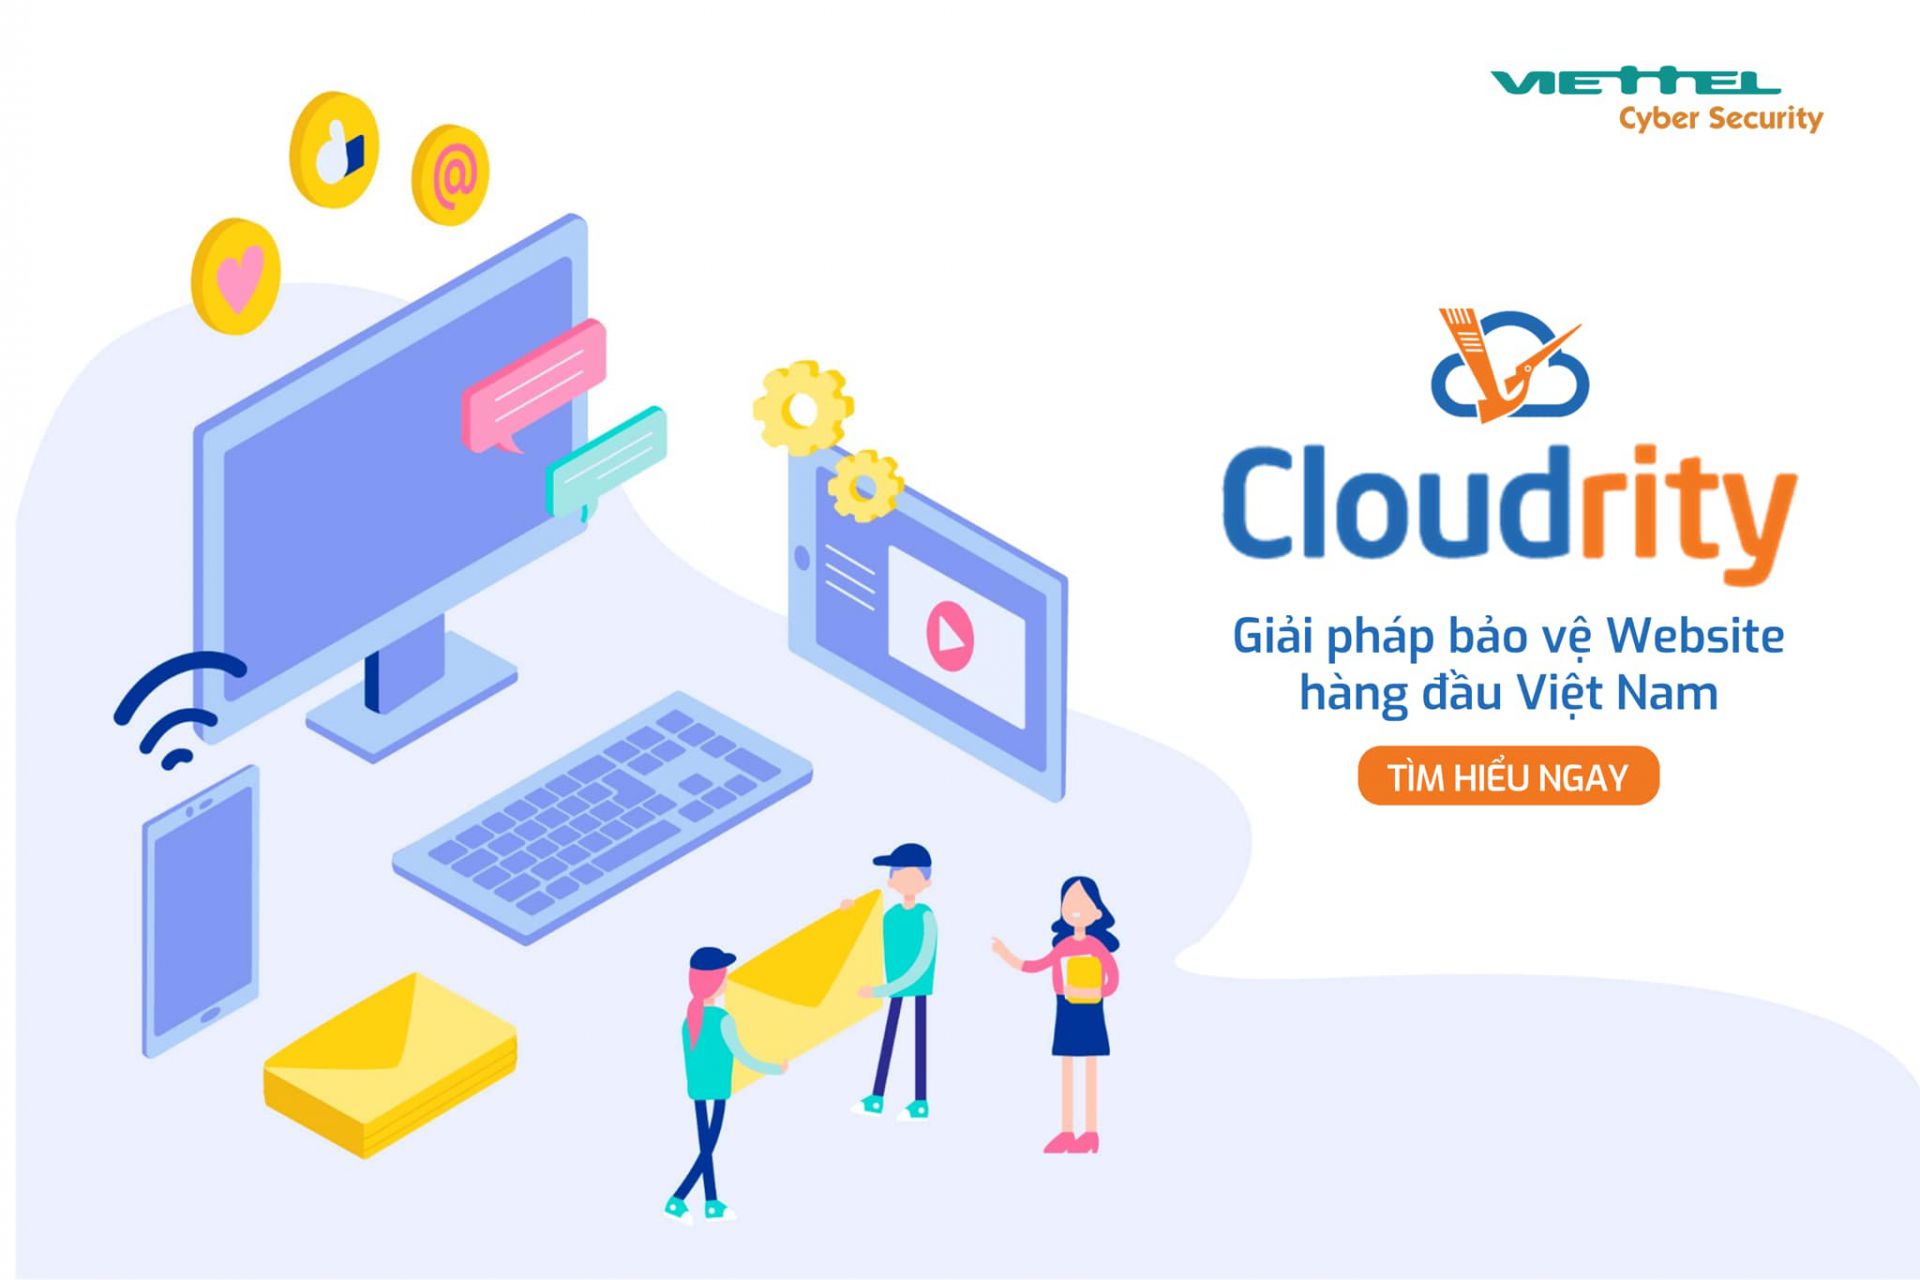 Cloudrity – giải pháp bảo vệ website và giá trị thương hiệu, niềm tin của doanh nghiệp